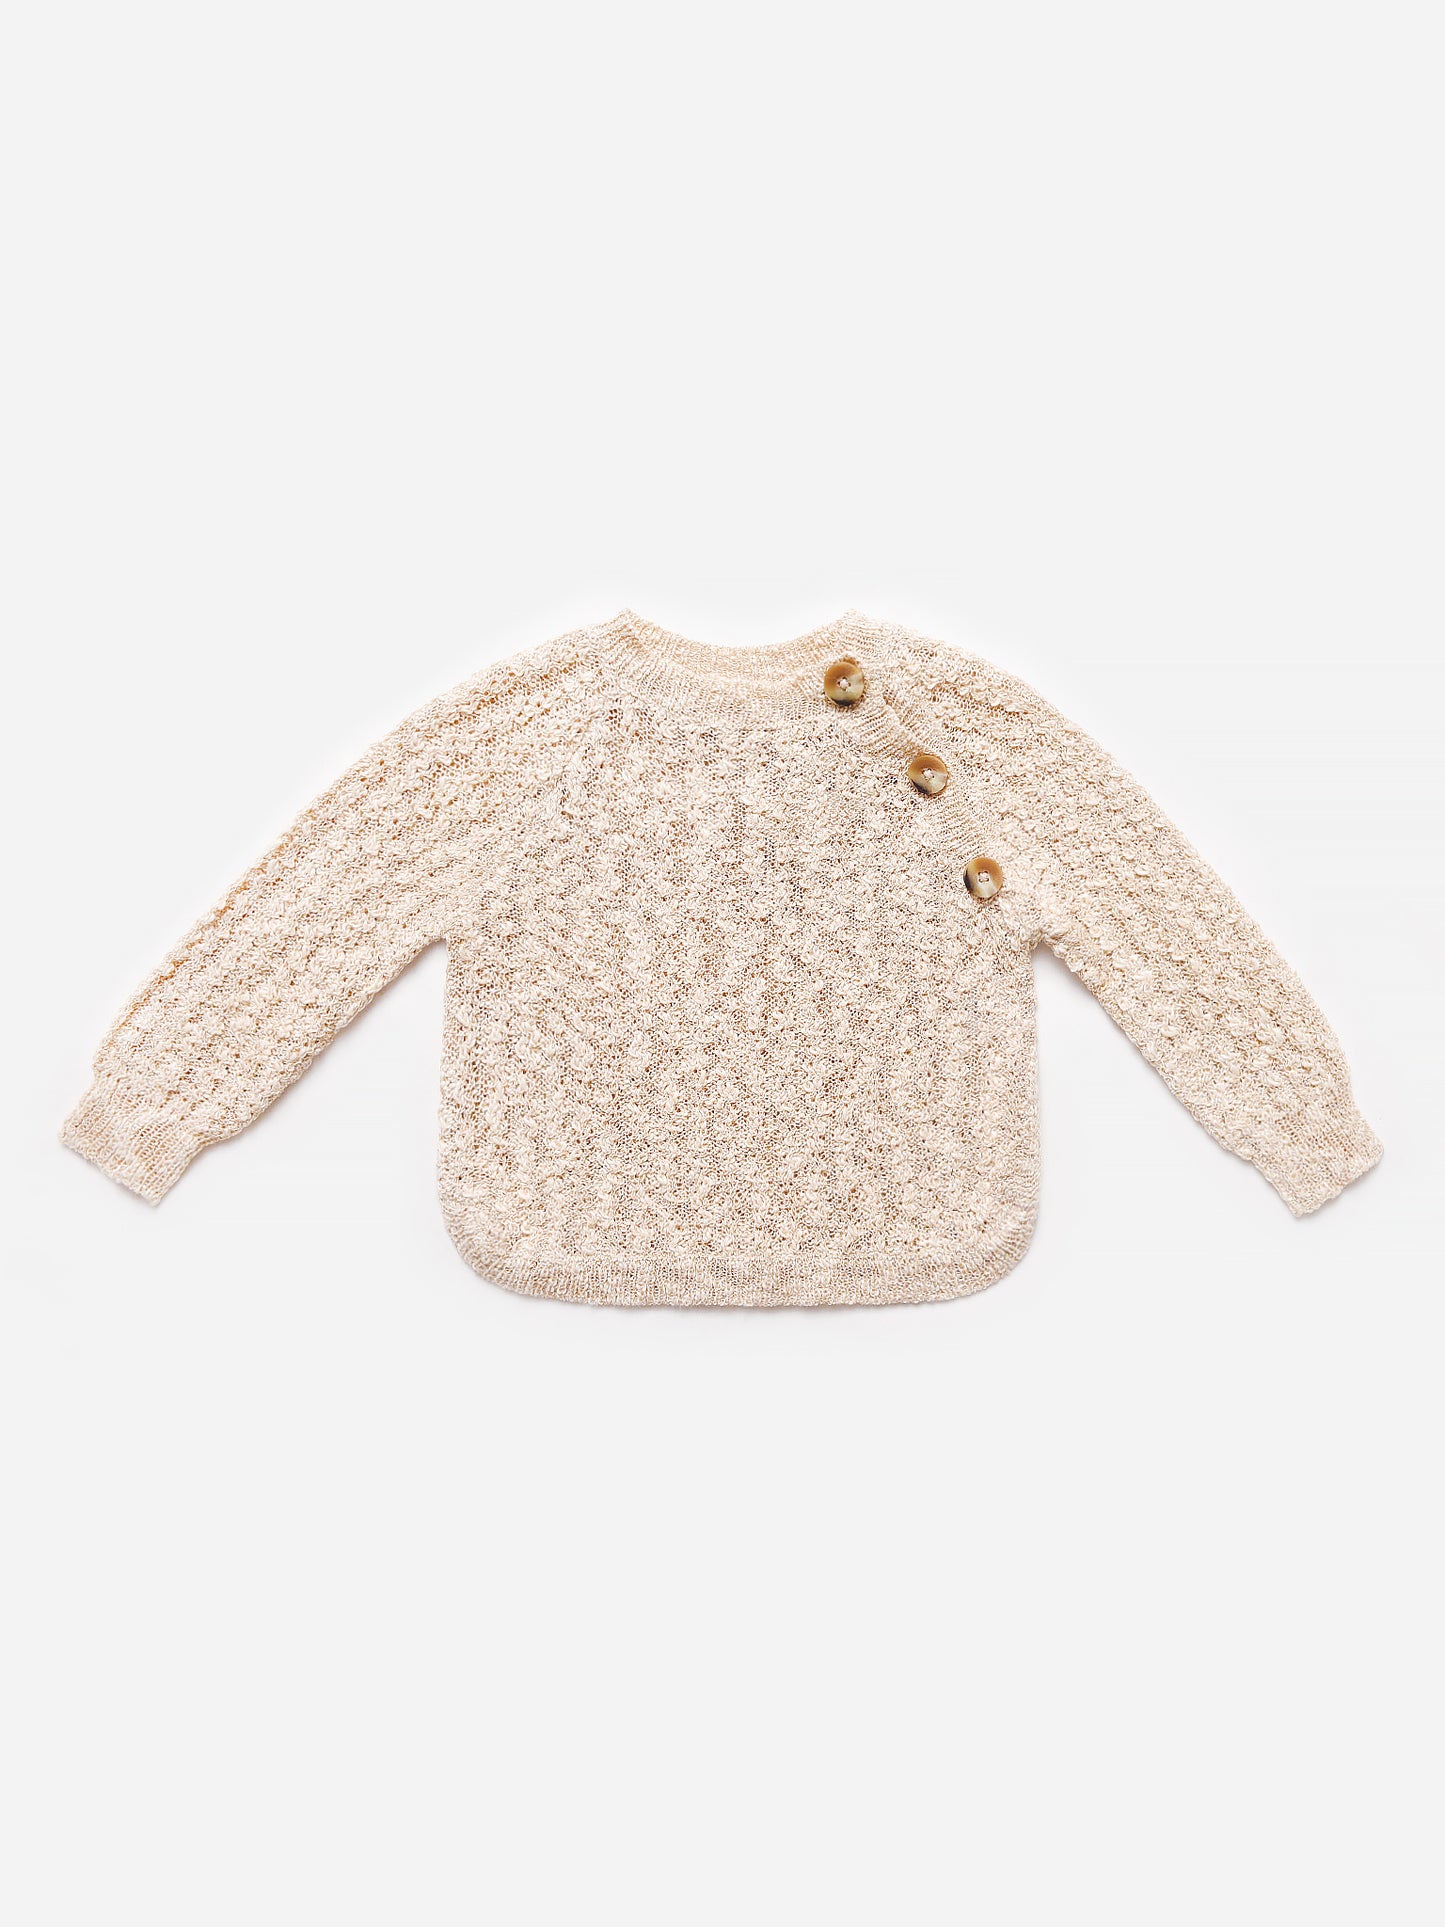 Lali Little Kids' Pine Sweater